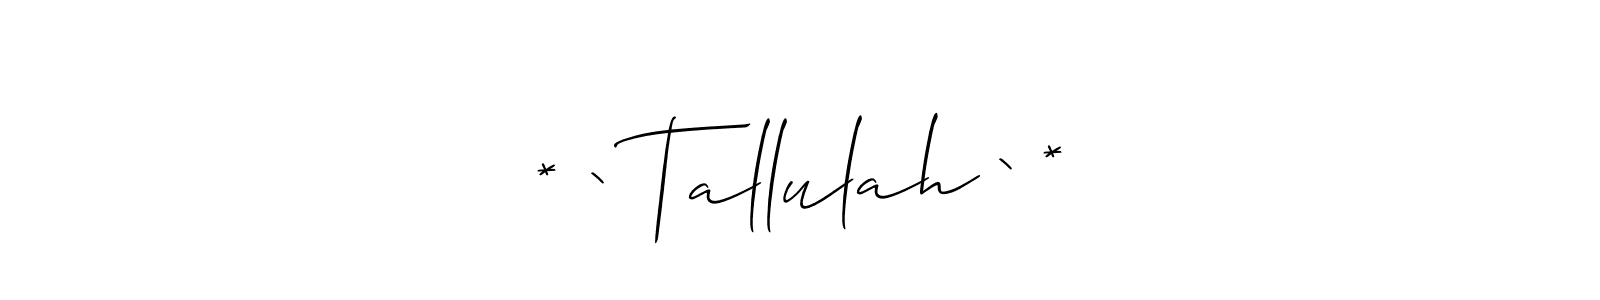 89+ * ` Tallulah ` * Name Signature Style Ideas | Get Name Signature